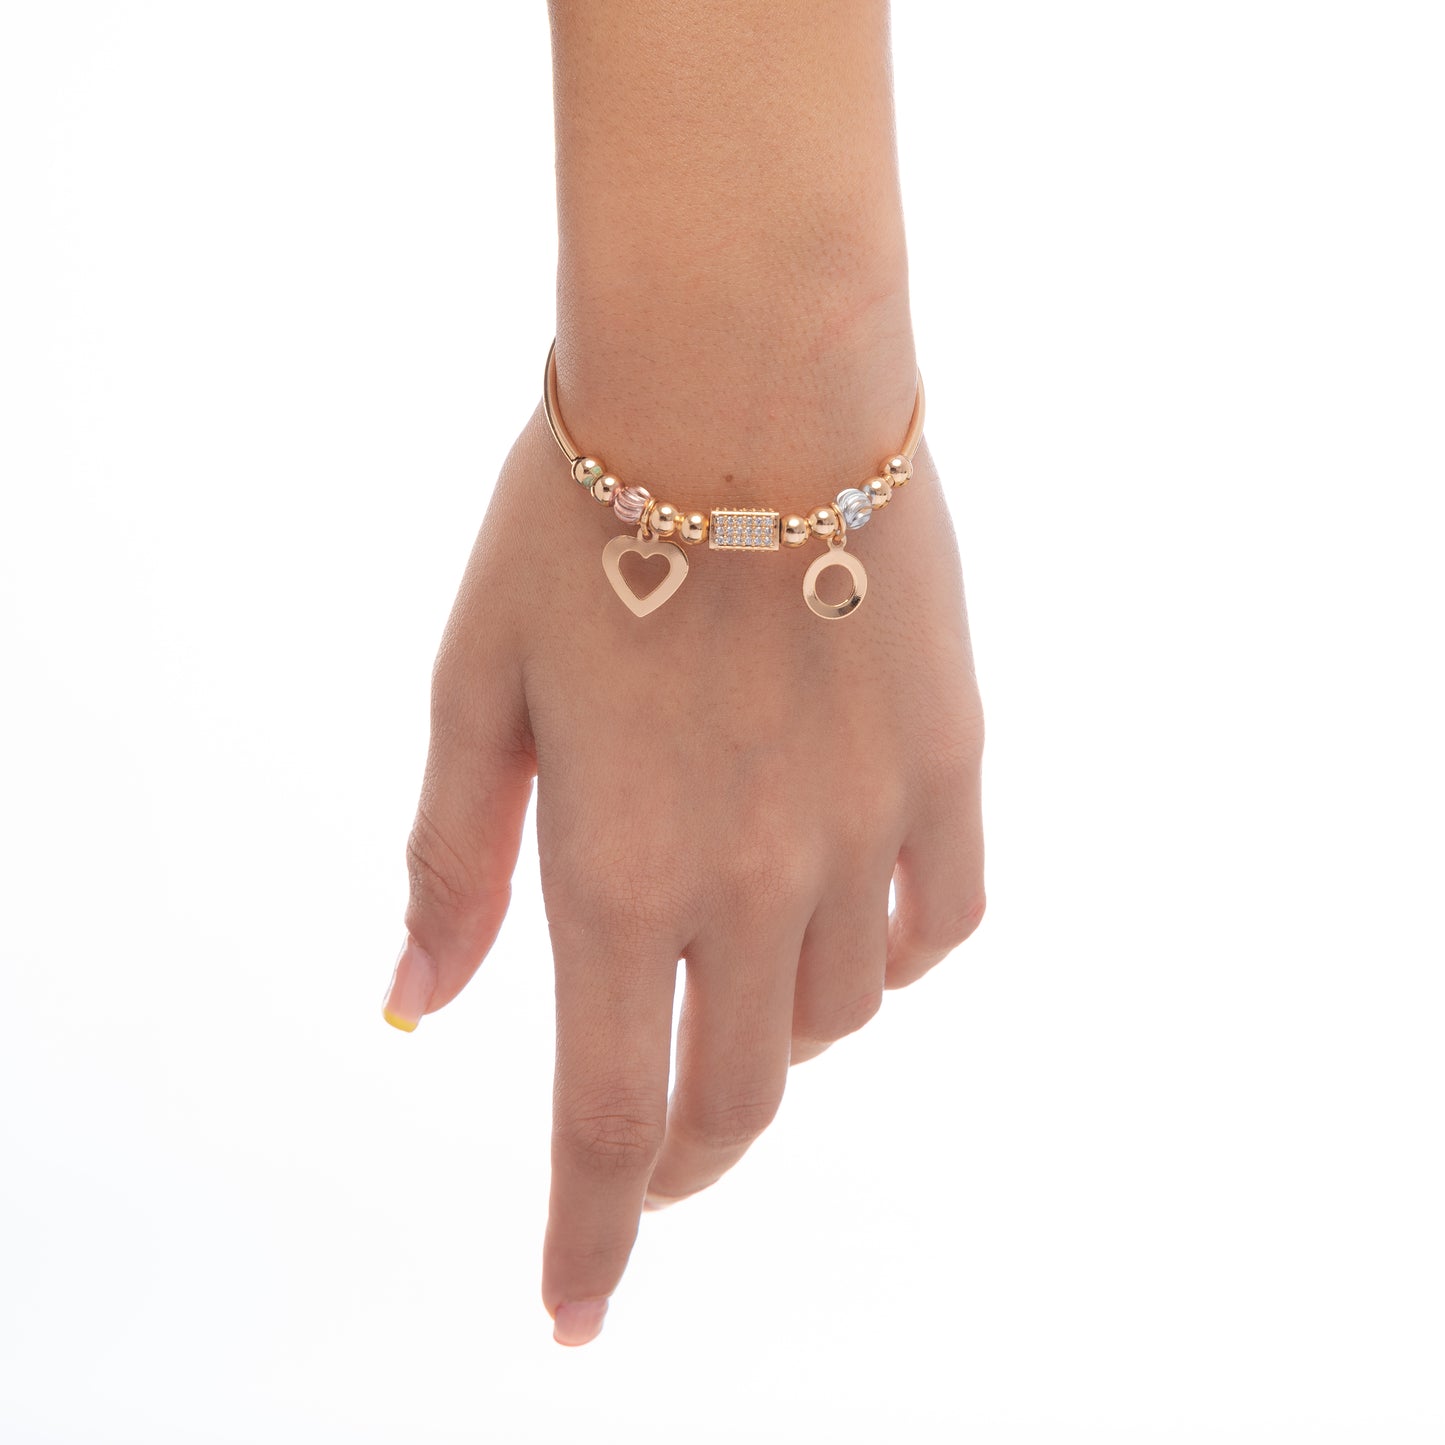 CDBR185- Gold plated Bracelet